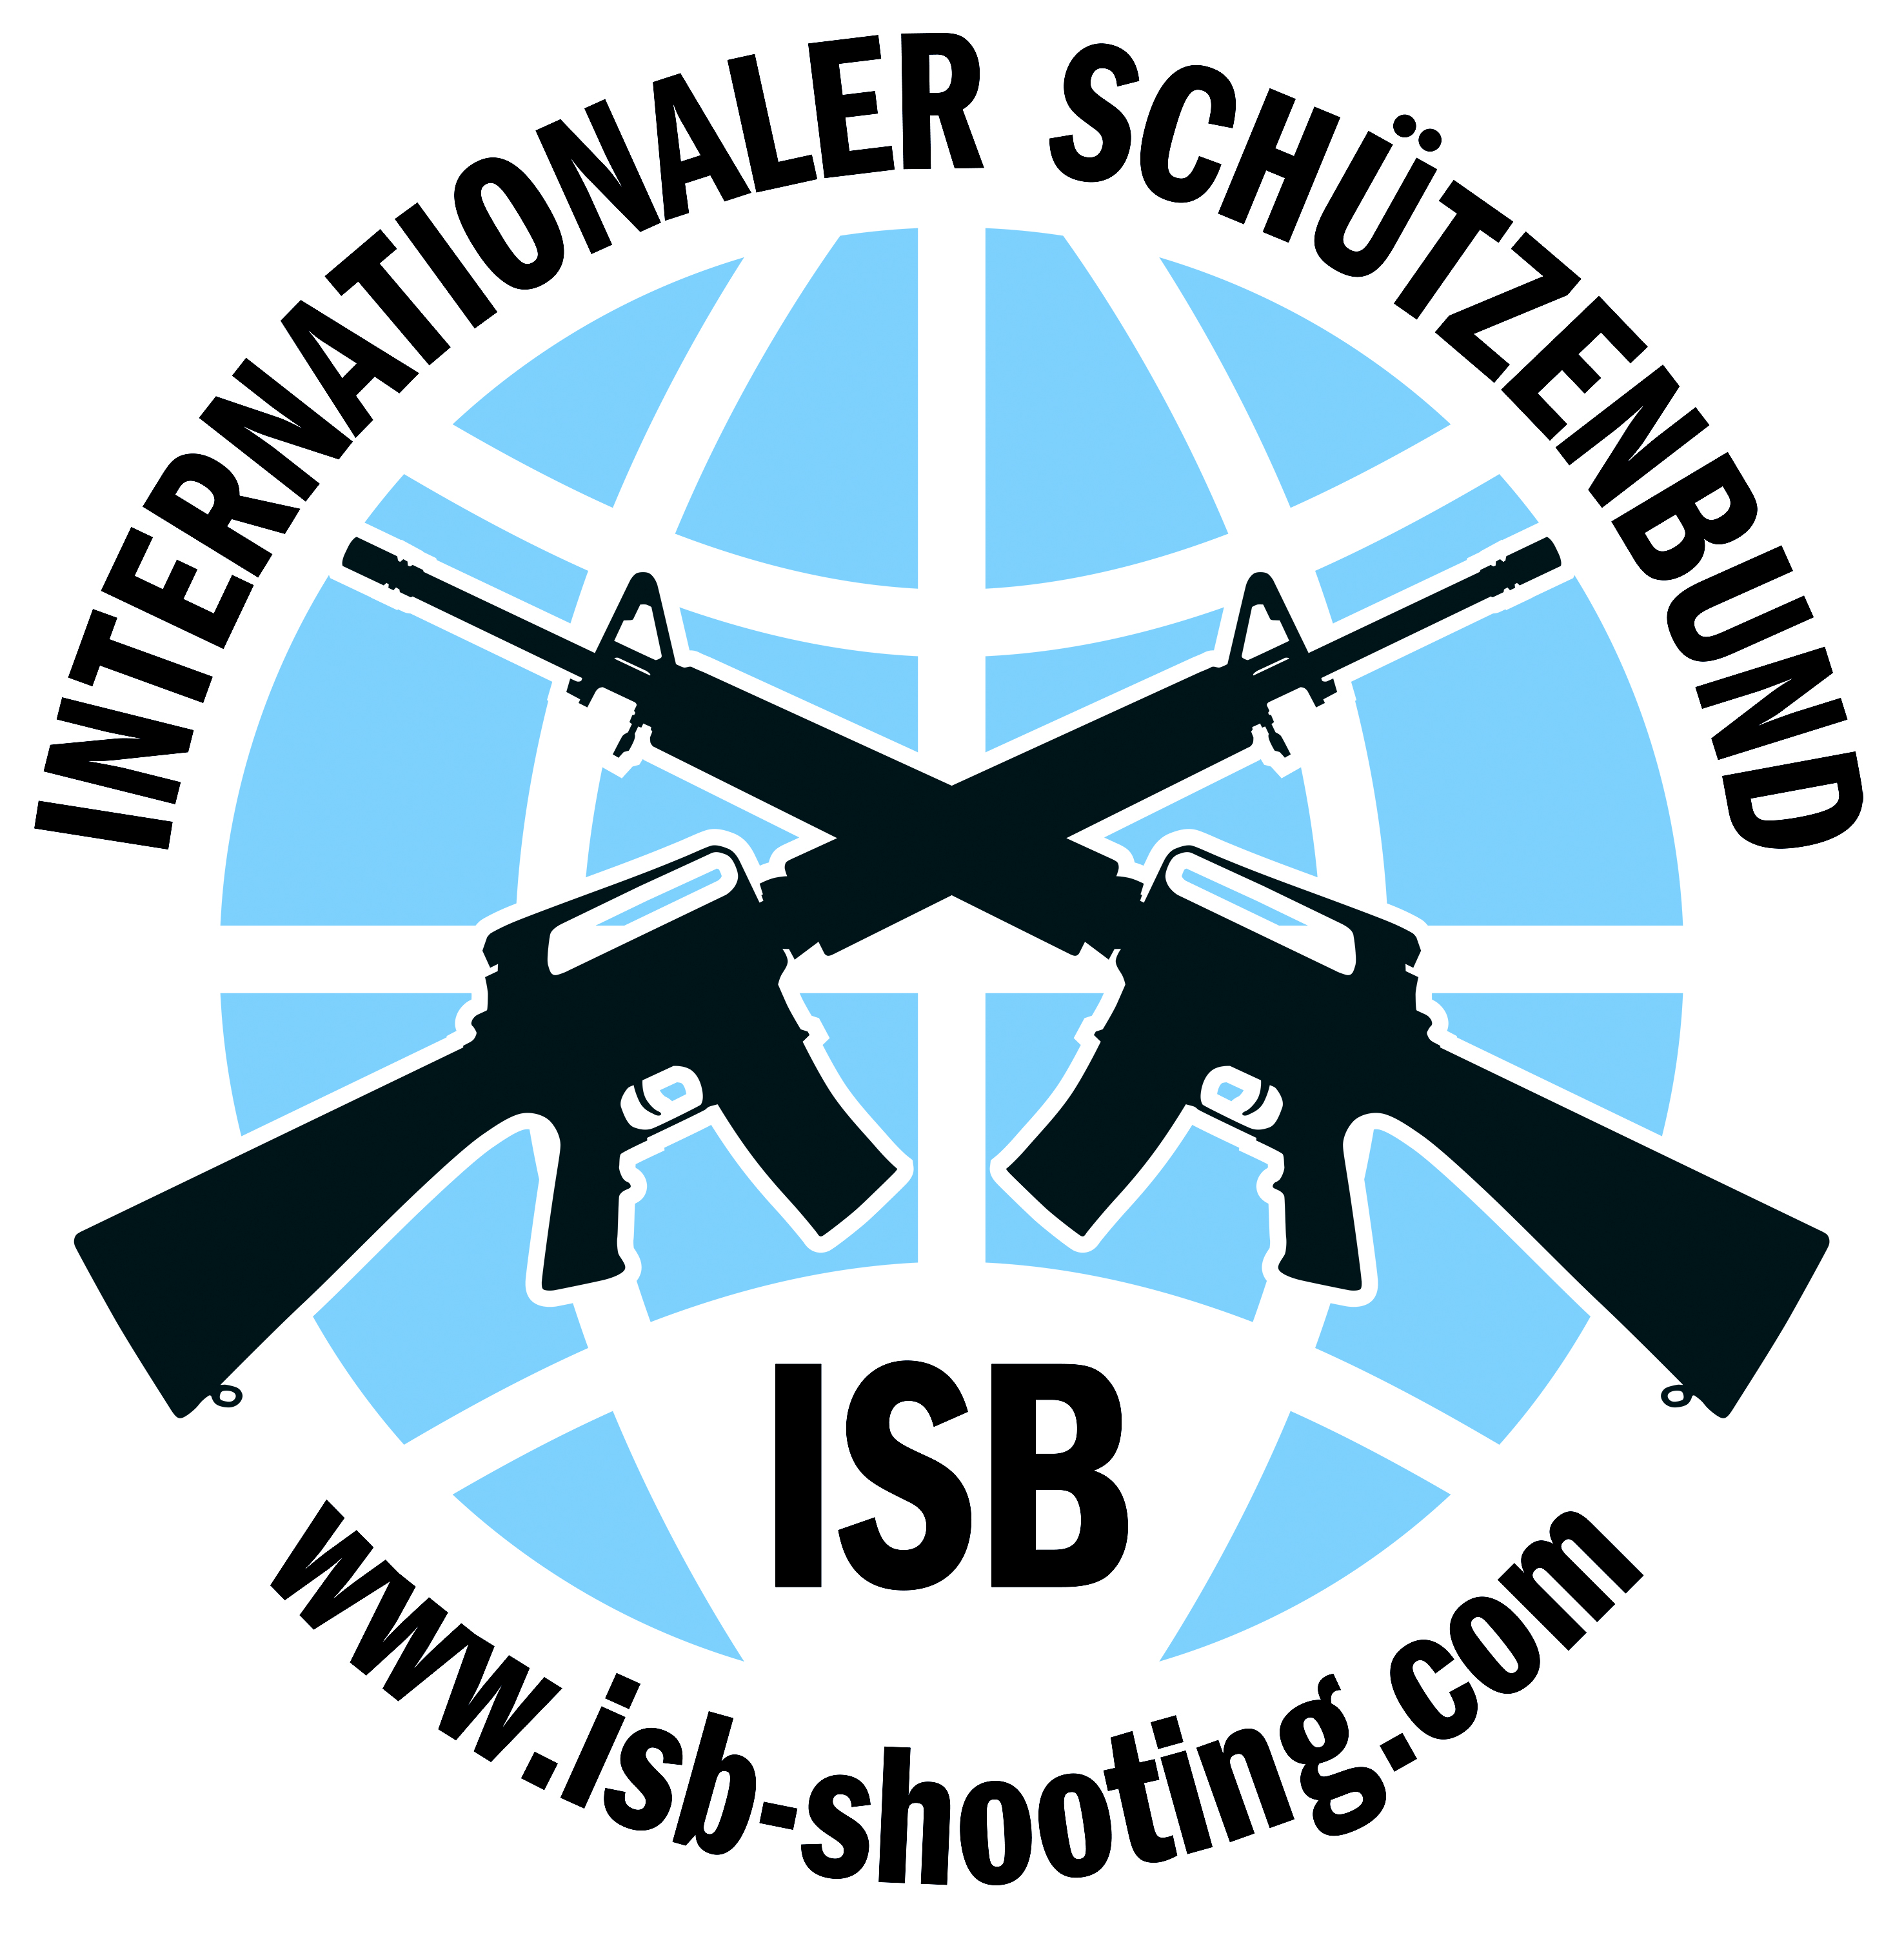 (c) Isb-shooting.com